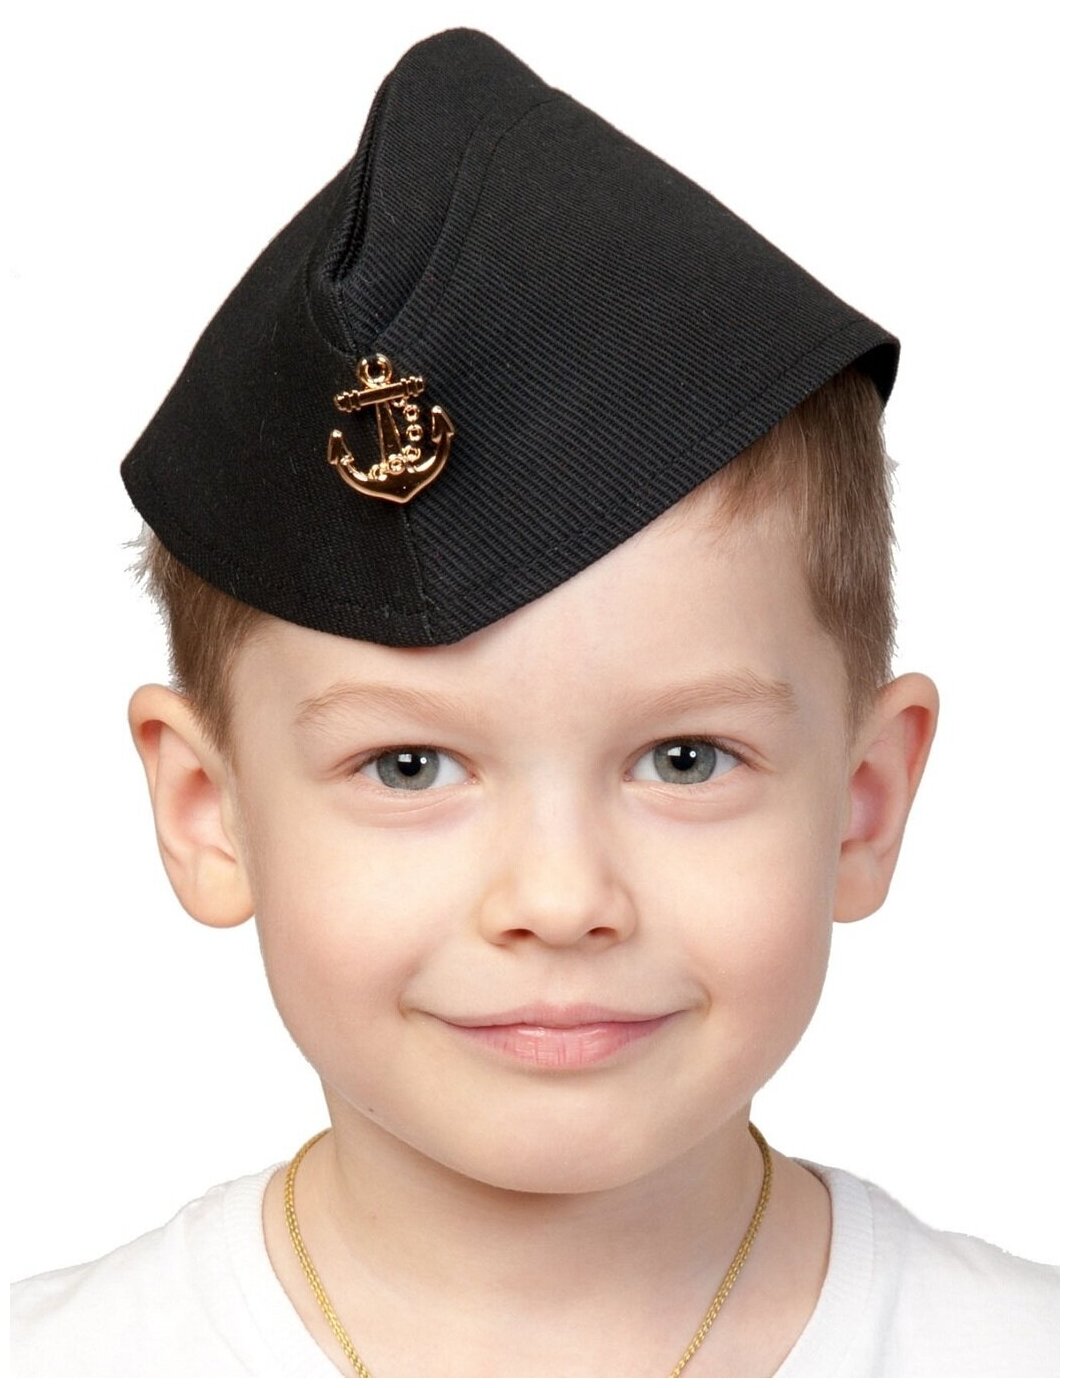 Пилотка ВМФ детская